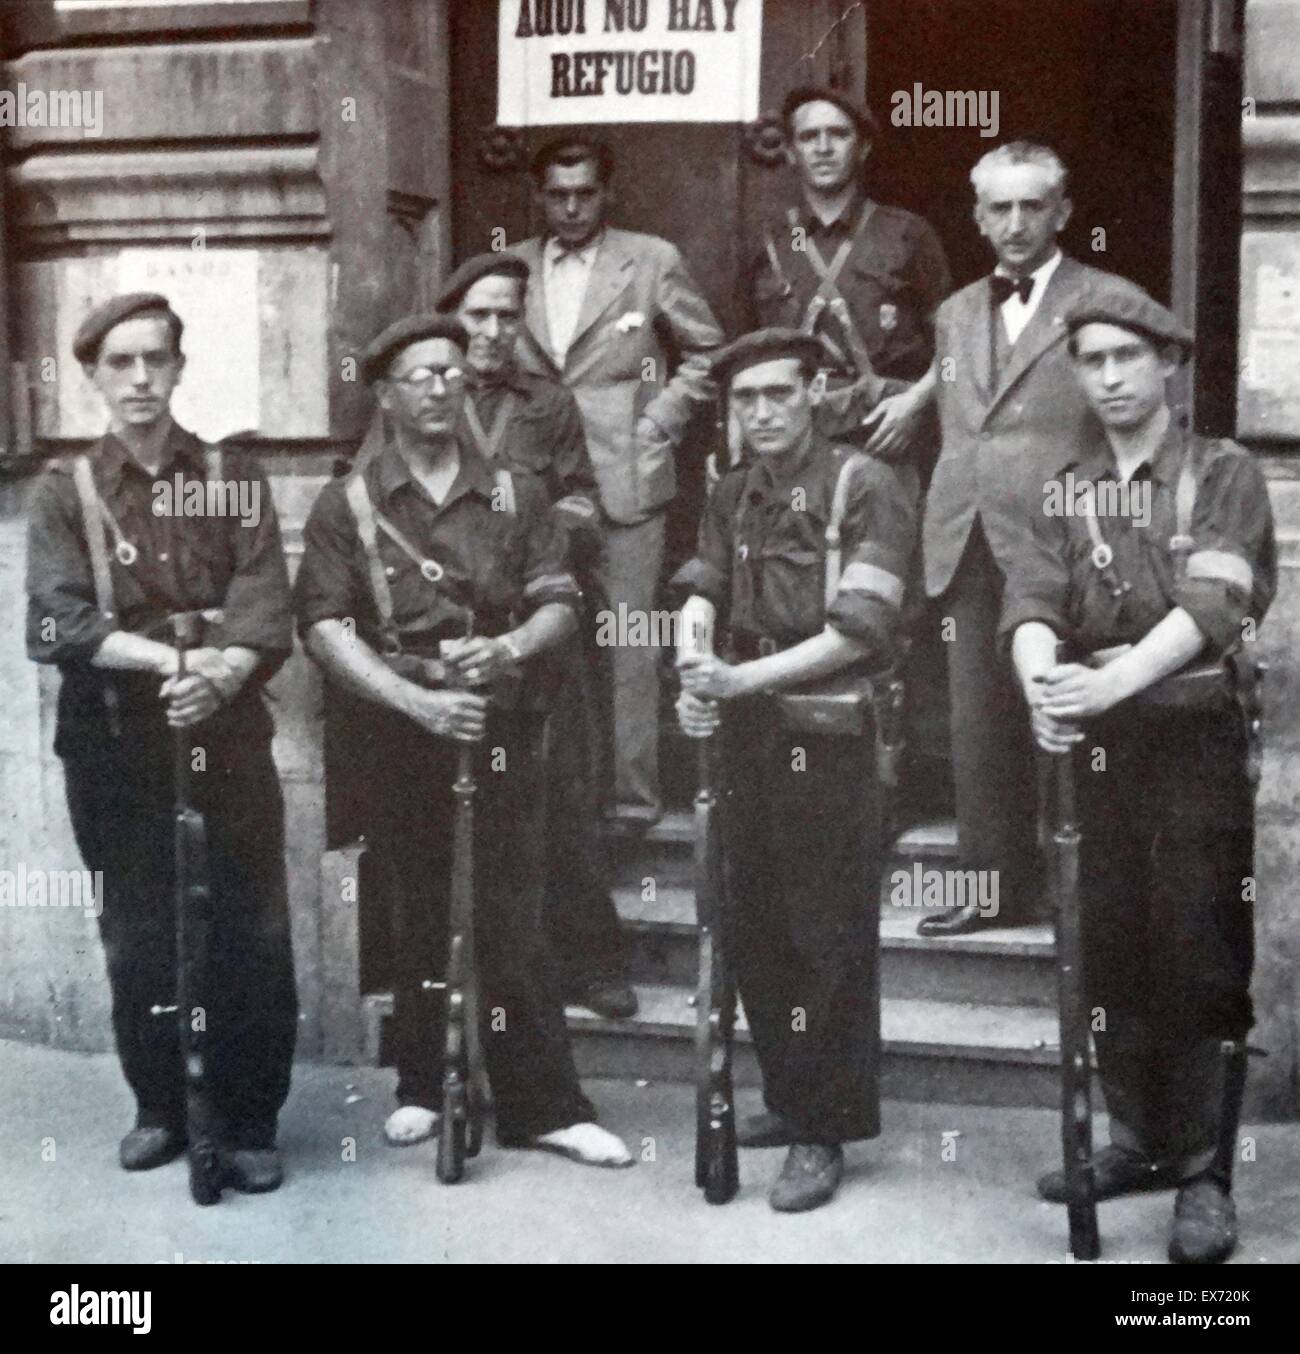 Los soldados de la guardia republicana un banco edificio utilizado como refugio antiaéreo durante la Guerra Civil Española Foto de stock